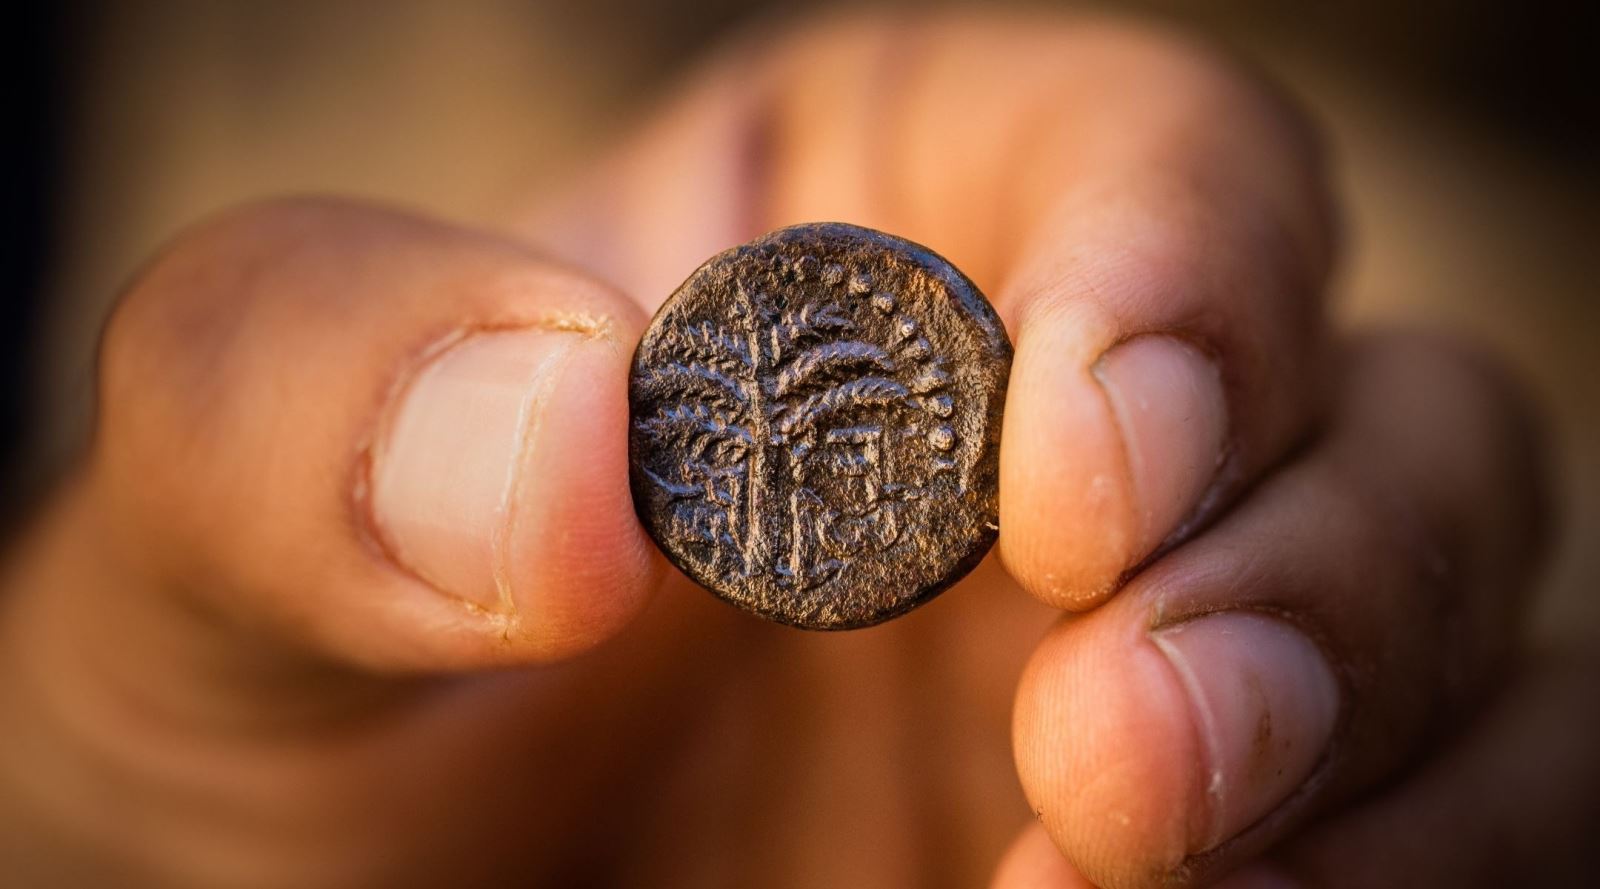 Đồng tiền cổ là một tác phẩm nghệ thuật, mang trong mình nét đẹp tinh tế và sự sang trọng của thời đại cổ đại. Hình ảnh sẽ cho bạn thấy sự độc đáo trong từng chi tiết của chúng.